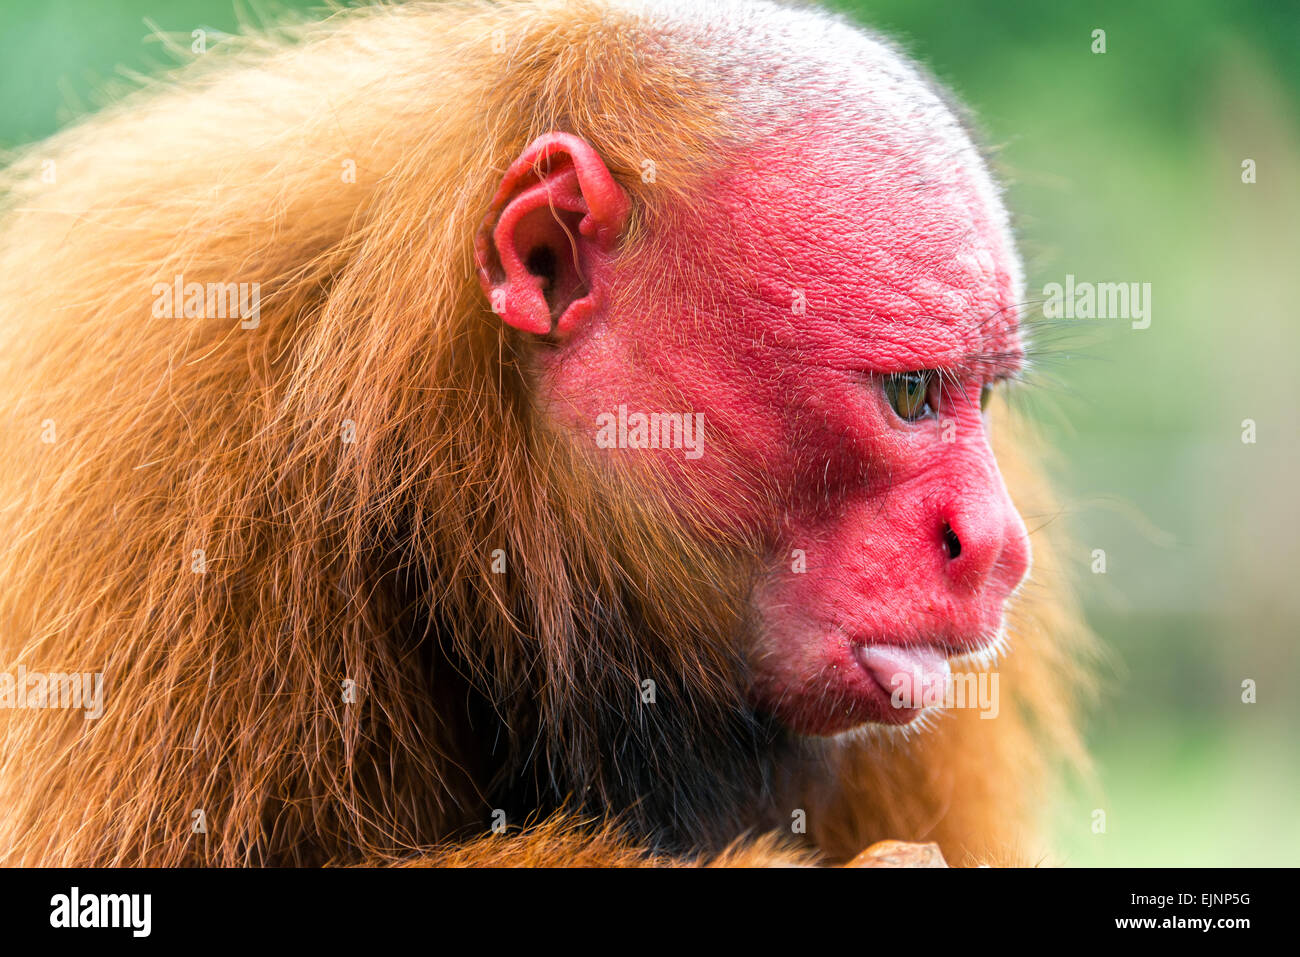 Monkey red face immagini e fotografie stock ad alta risoluzione - Alamy